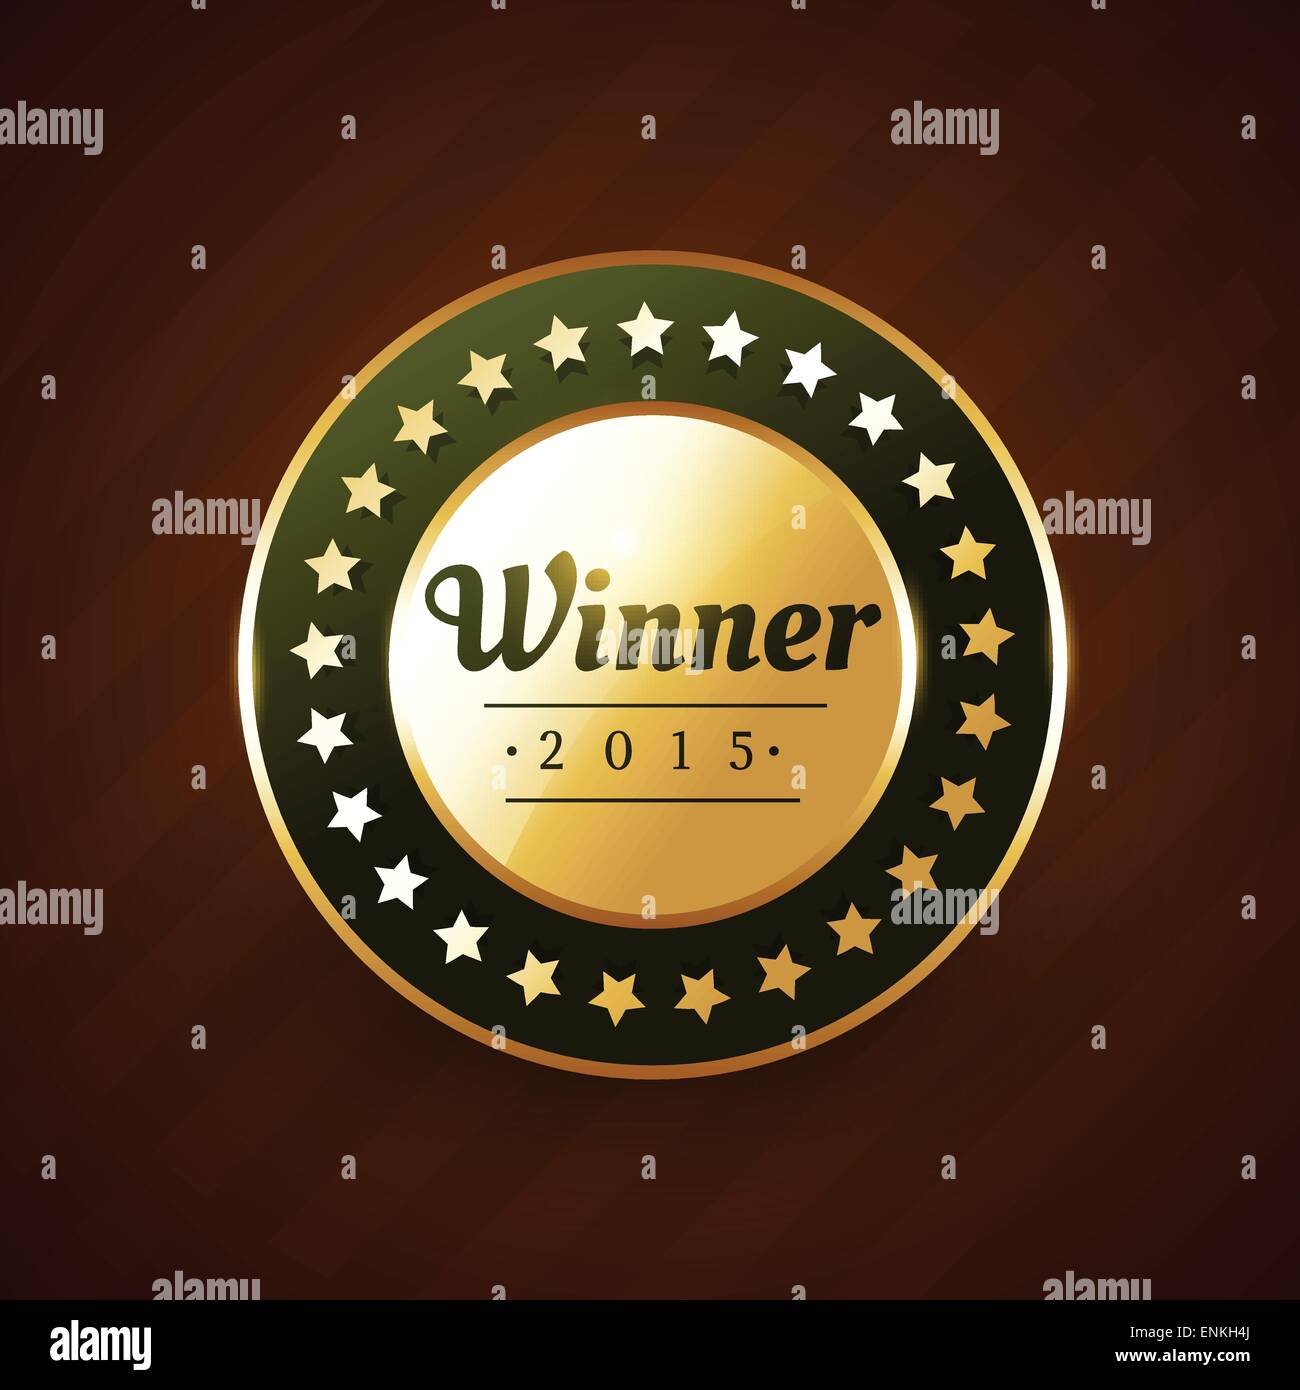 Winer dell'anno goldeb etichetta design badge con stelle che lo circonda Illustrazione Vettoriale